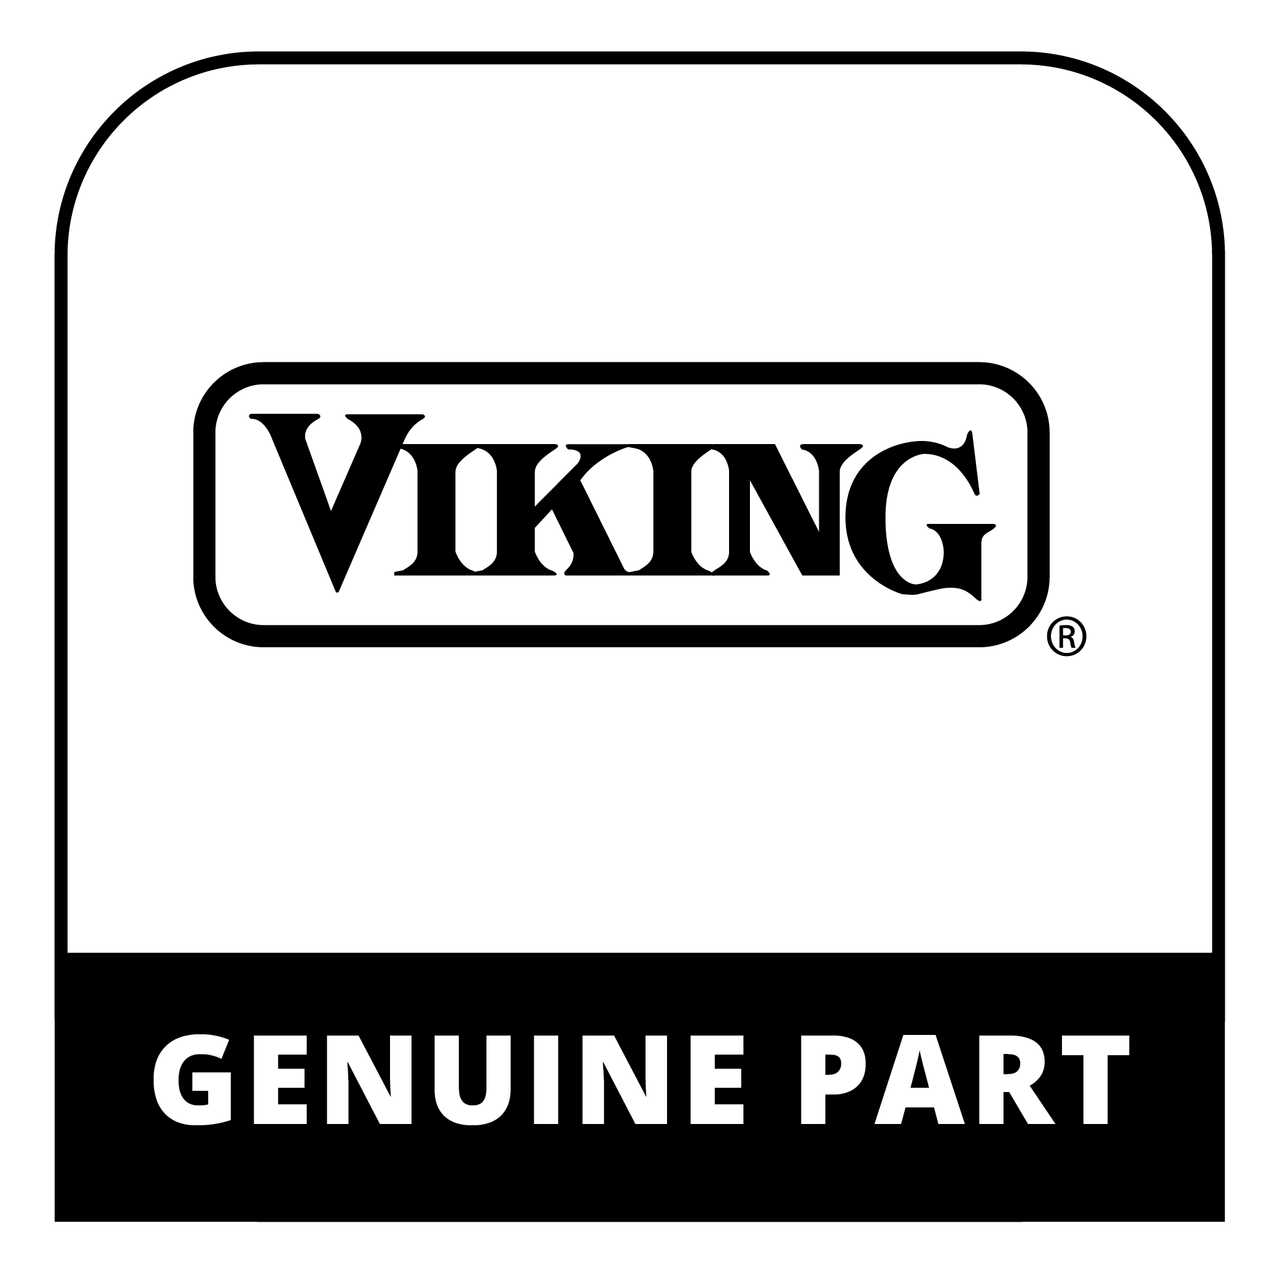 Viking 001541-000 - HOT AIR FAN BLADES, CRNI - 33. - Genuine Viking Part